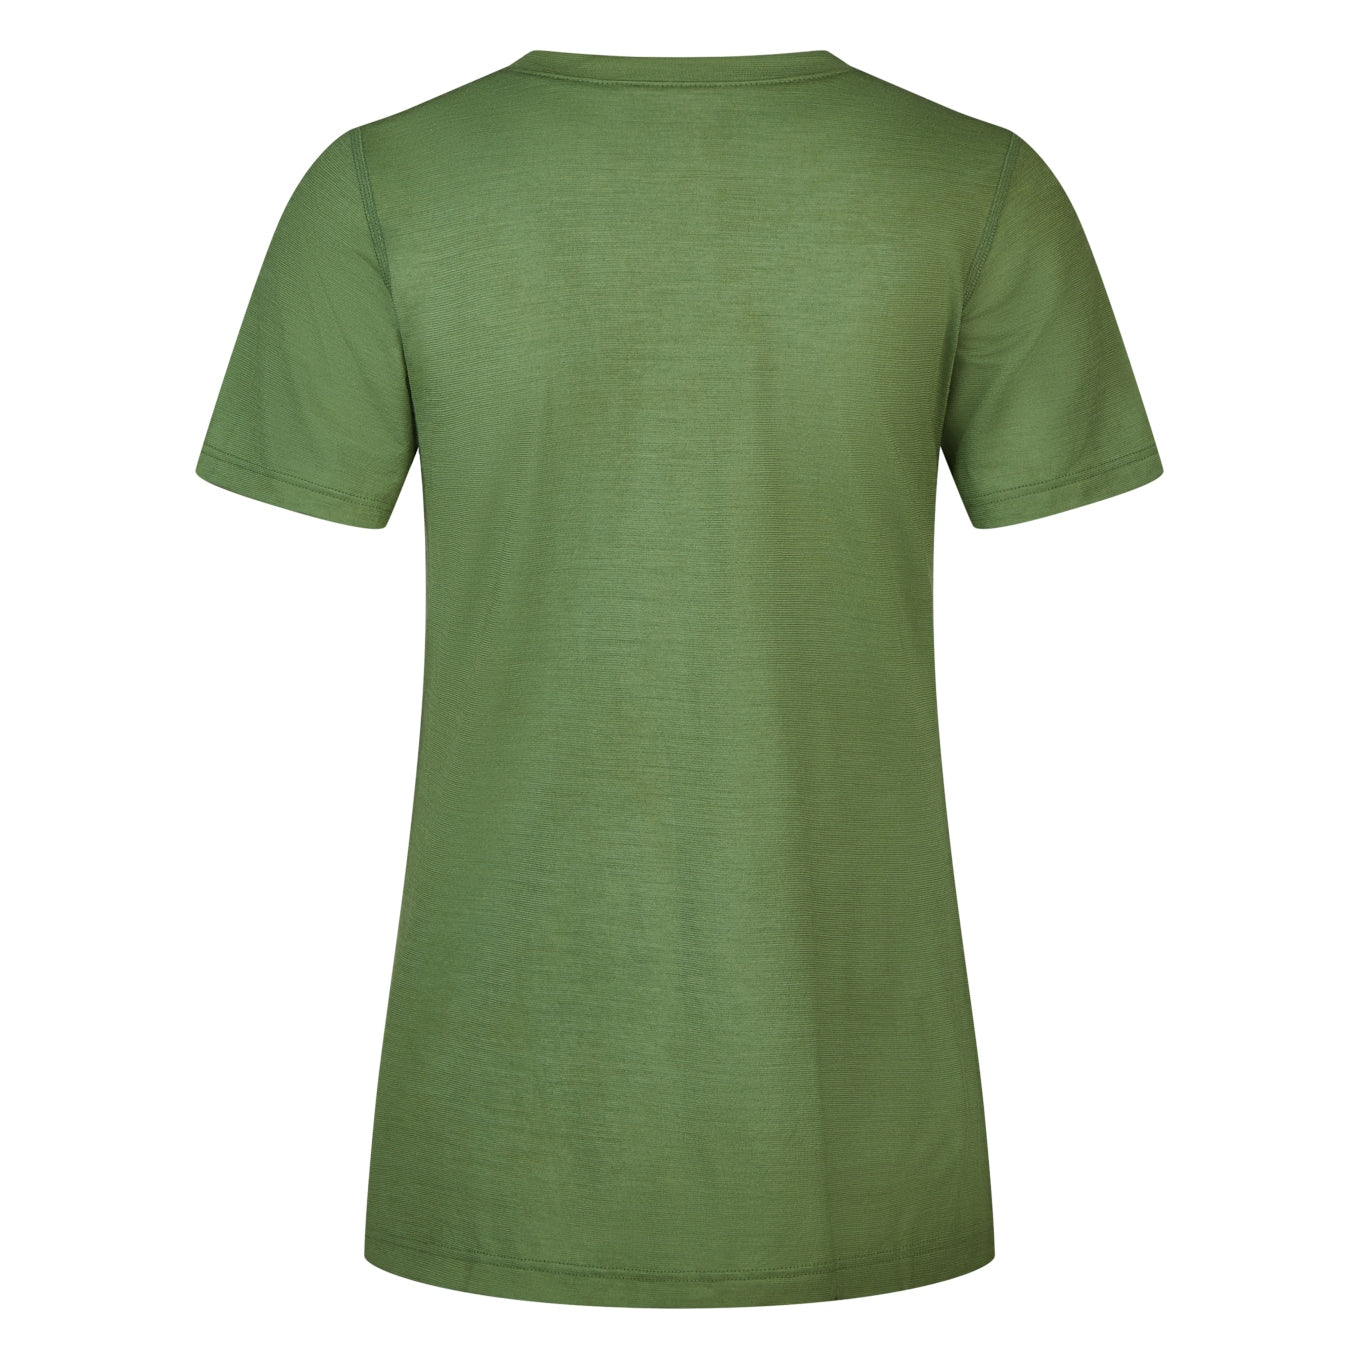 Gruenes T-Shirt aus 100 Prozent biologischer Merinowolle, reine Schurwolle, ökologisch, nachhaltig, fair und von Transhumance in Deutschland hergestellt. Rueckenansicht.